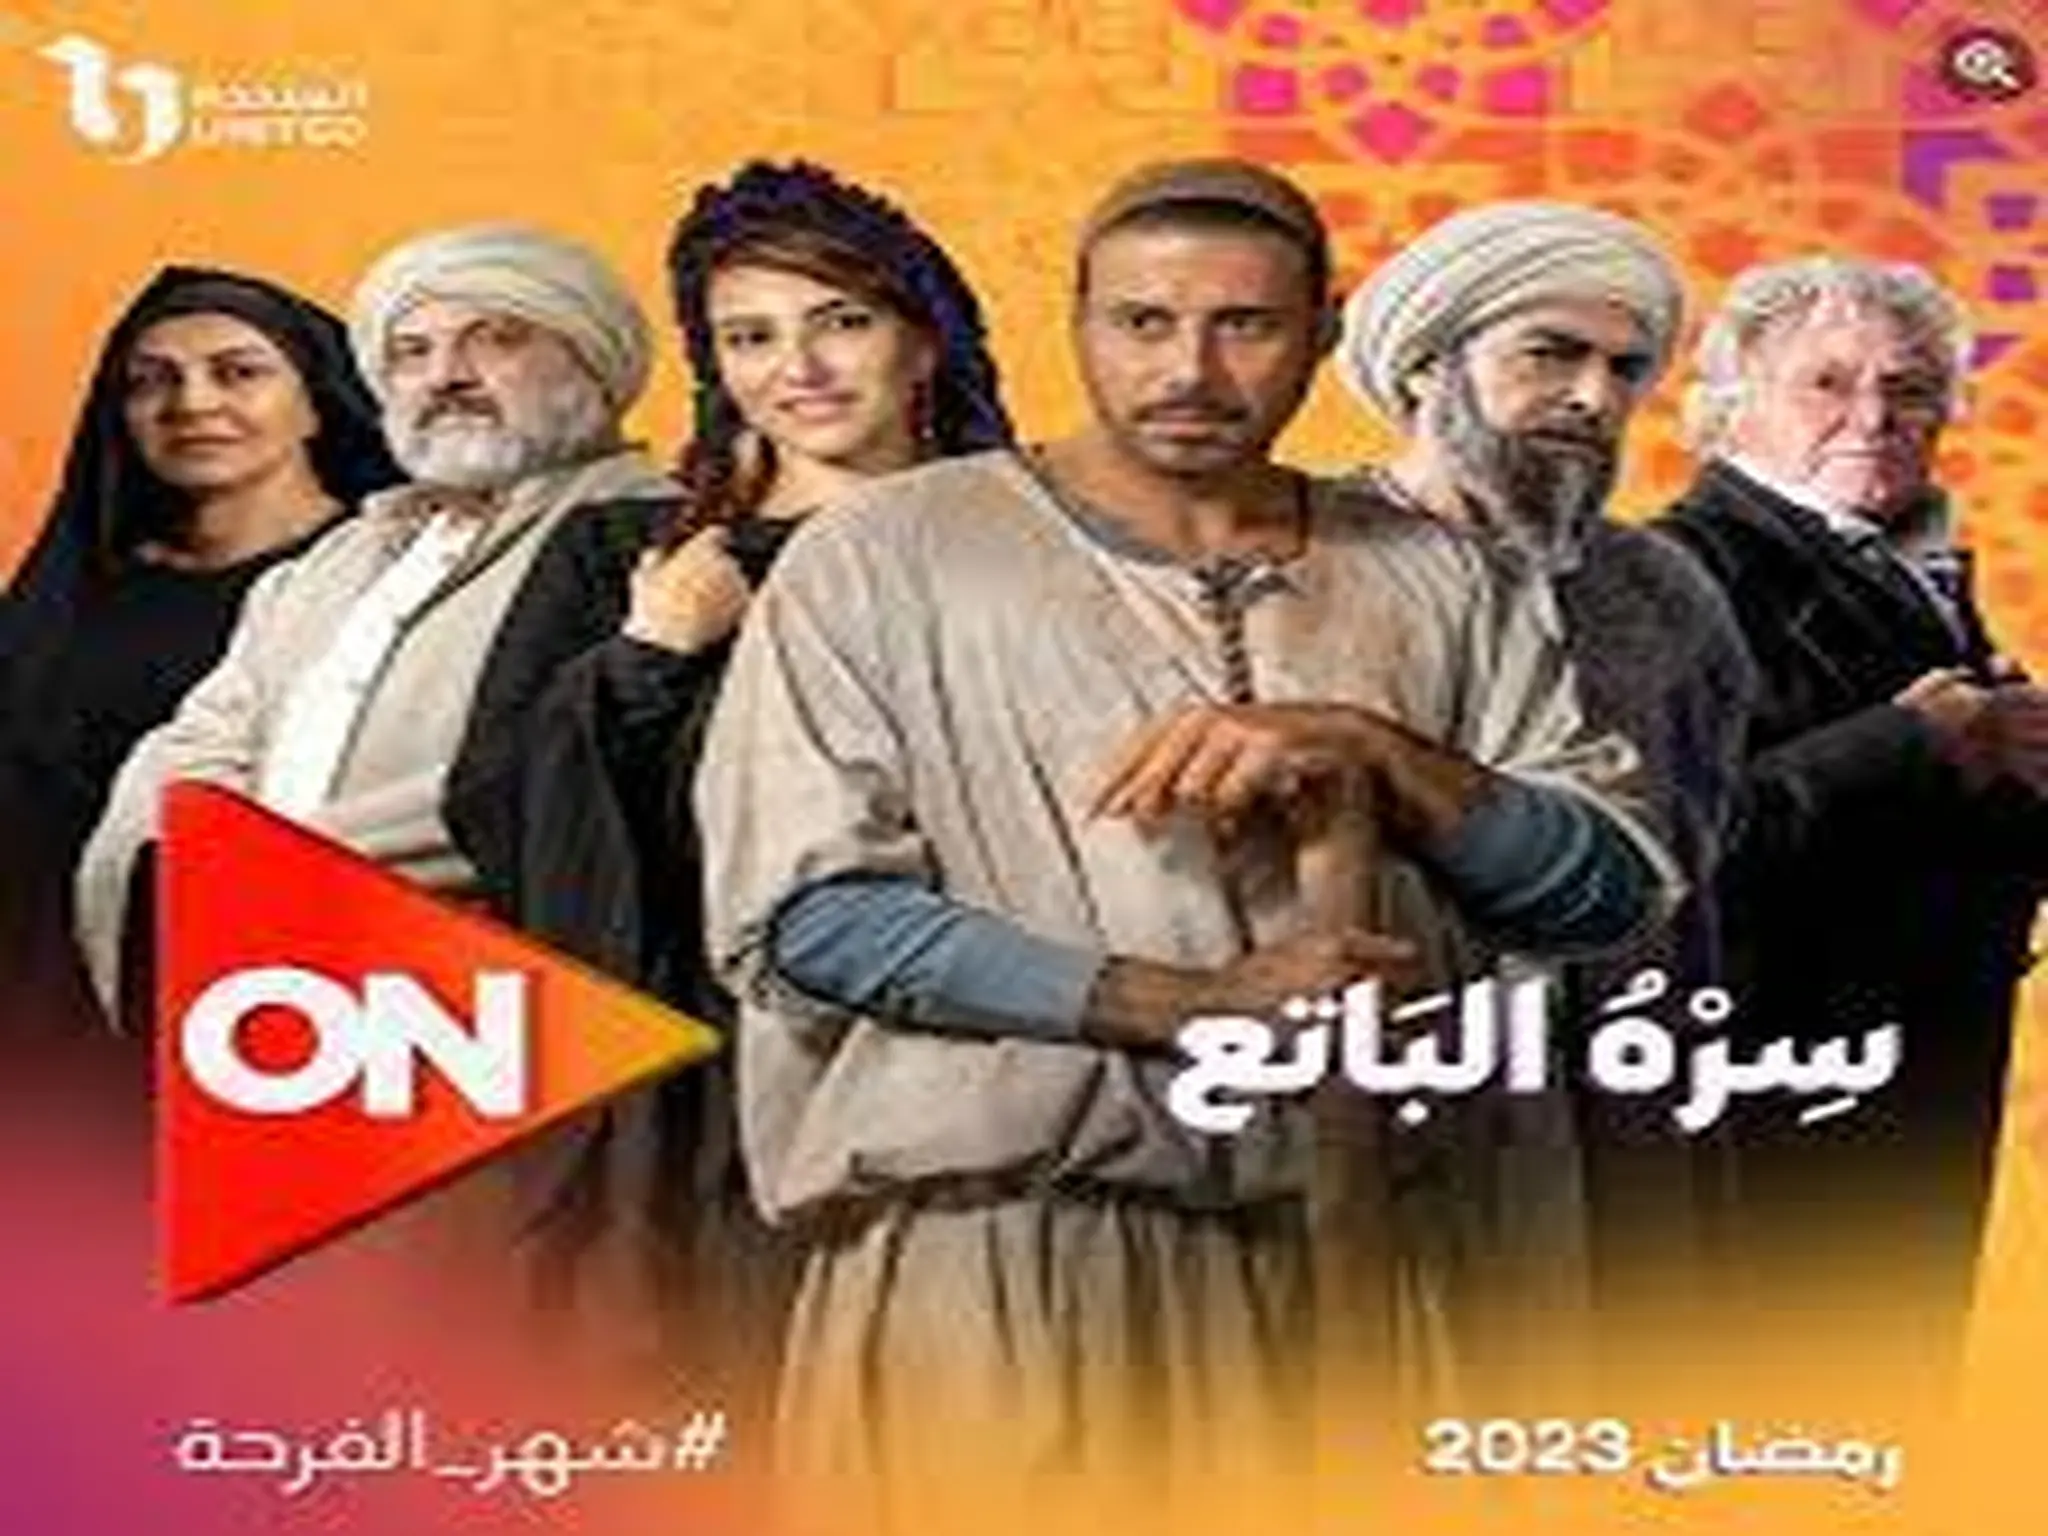 مسلسل "سره الباتع" بطولة أحمد فهمى على قناة ON فى رمضان 2023